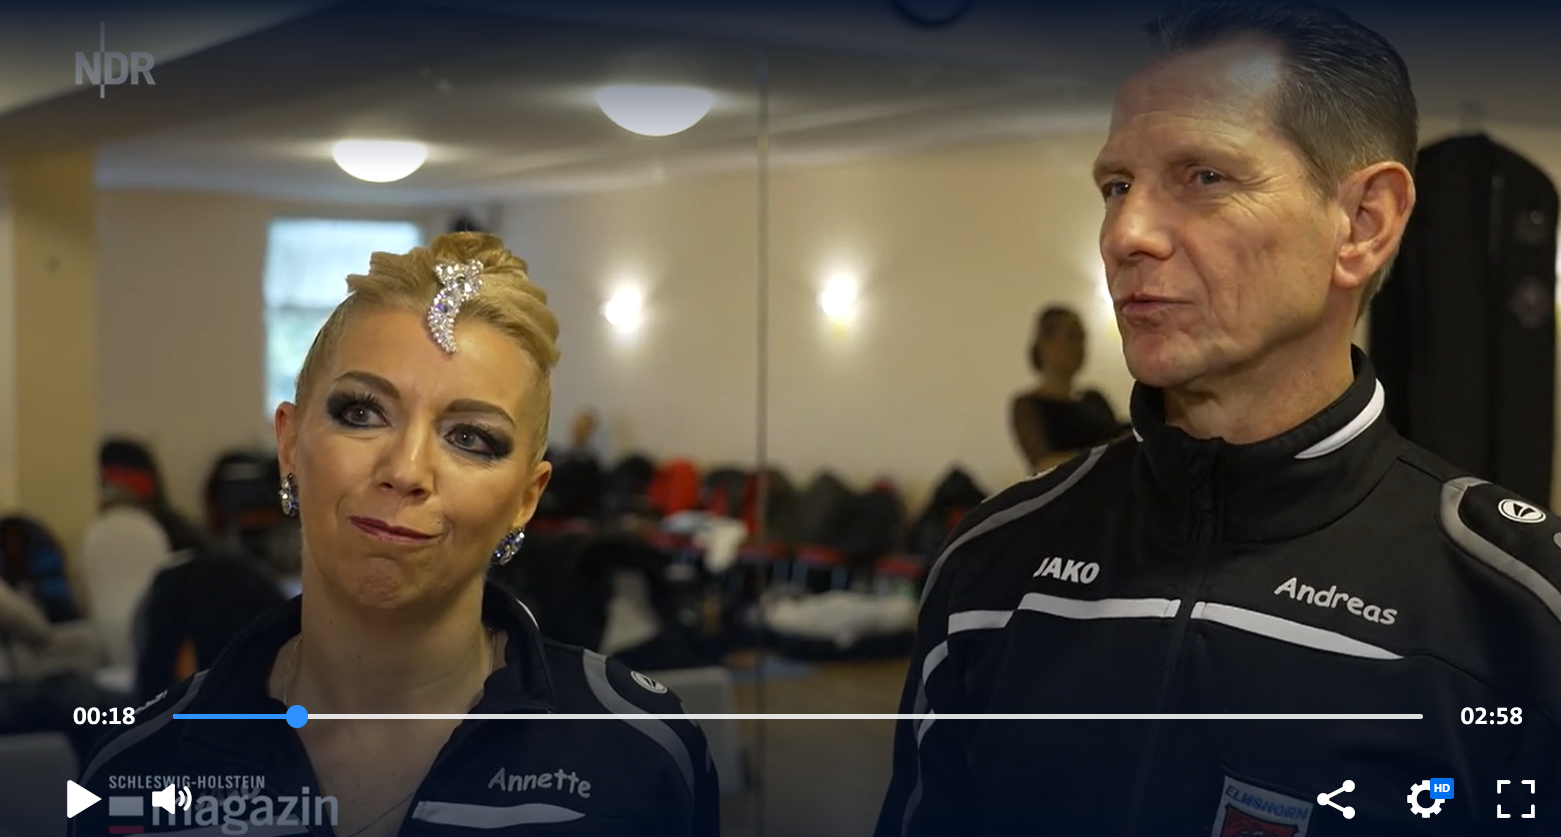 NDR-Video „Deutschlands besten Tanzpaare beim Turnier in Glinde“ mit Annette und Andreas